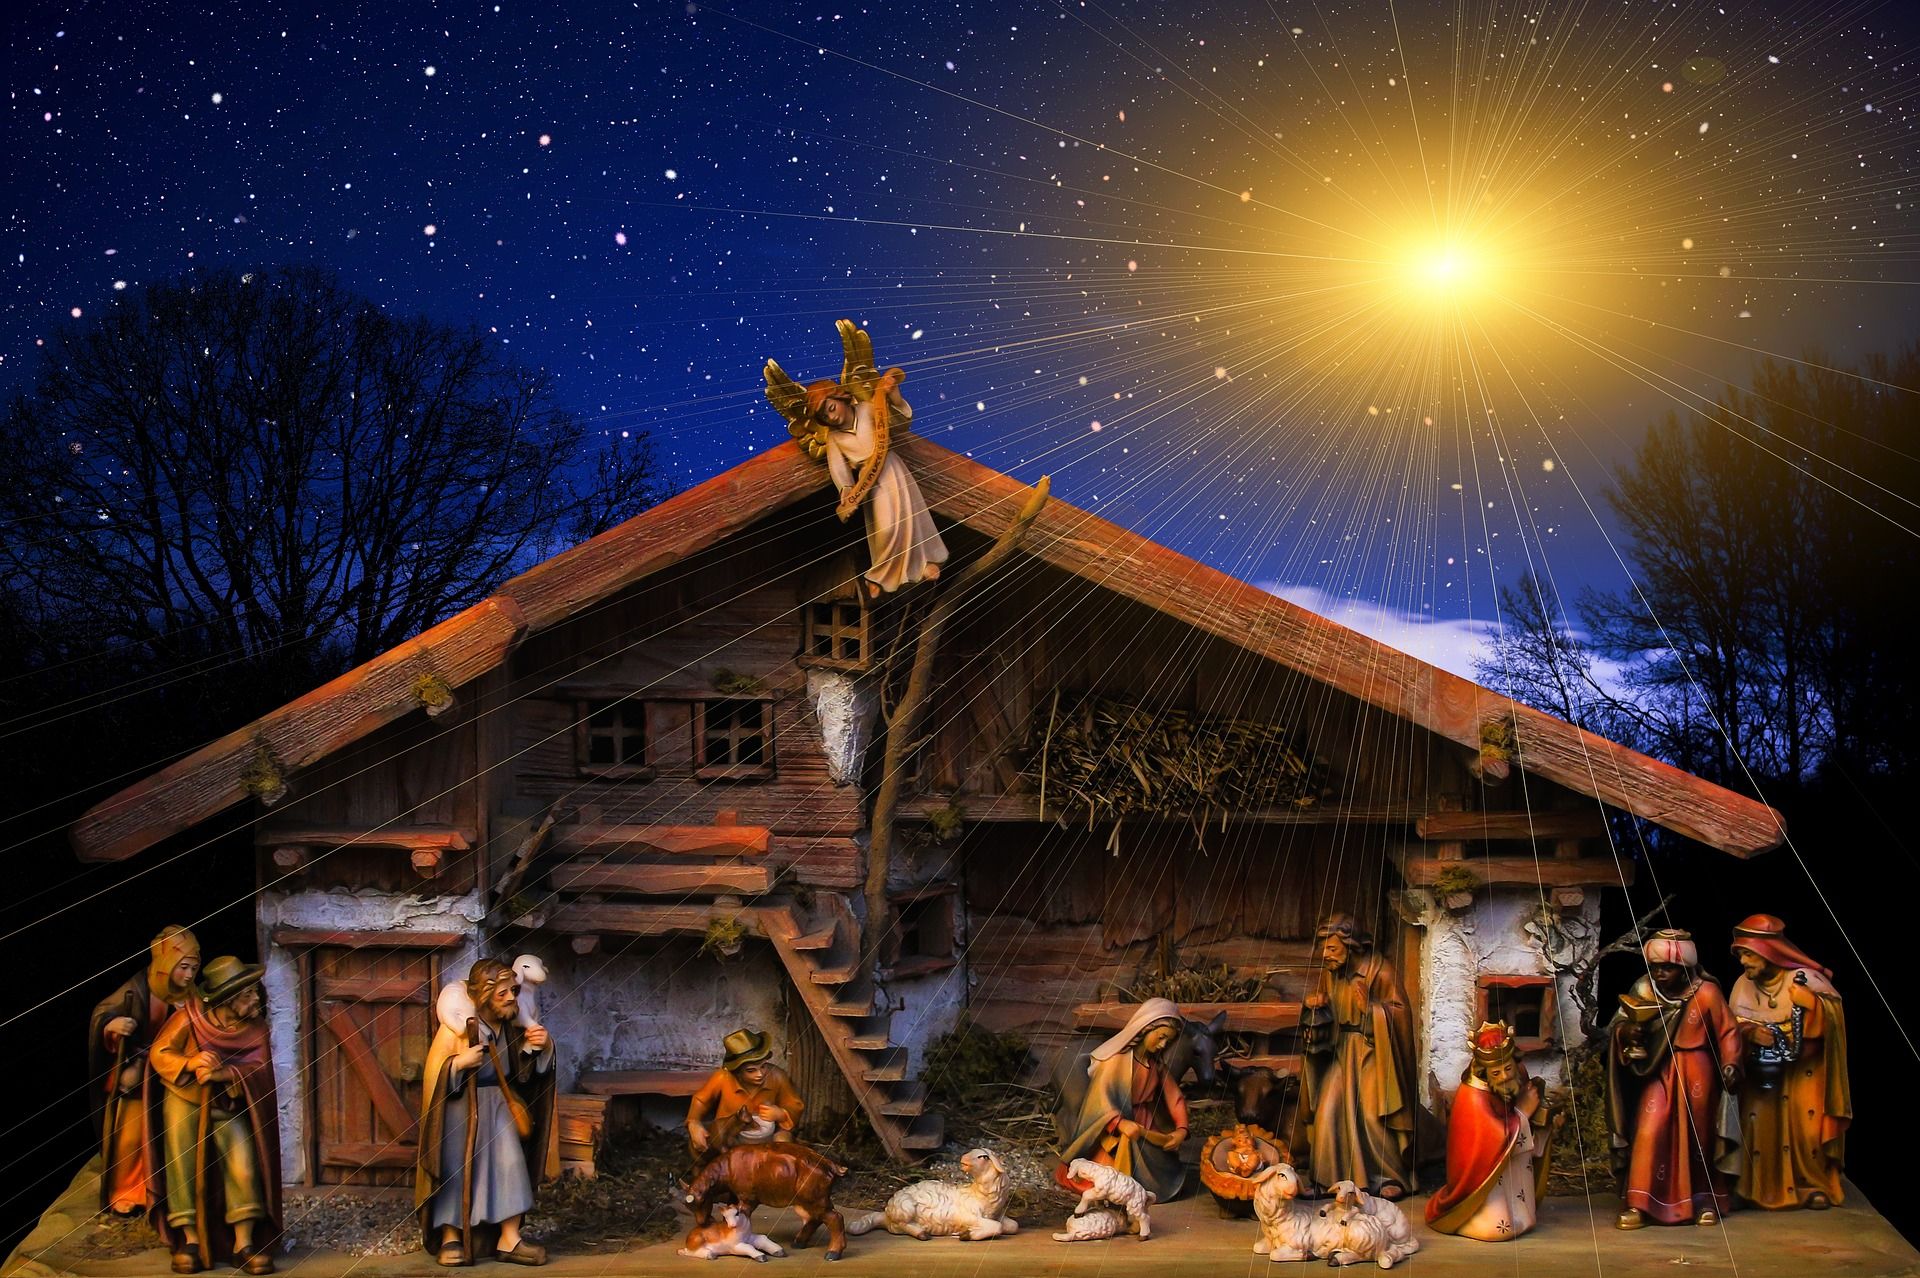 crèche de Noël fantaisie - Image par Gerd Altmann de https://pixabay.com/fr/photos/no%C3%ABl-sauveur-naissance-2874137/